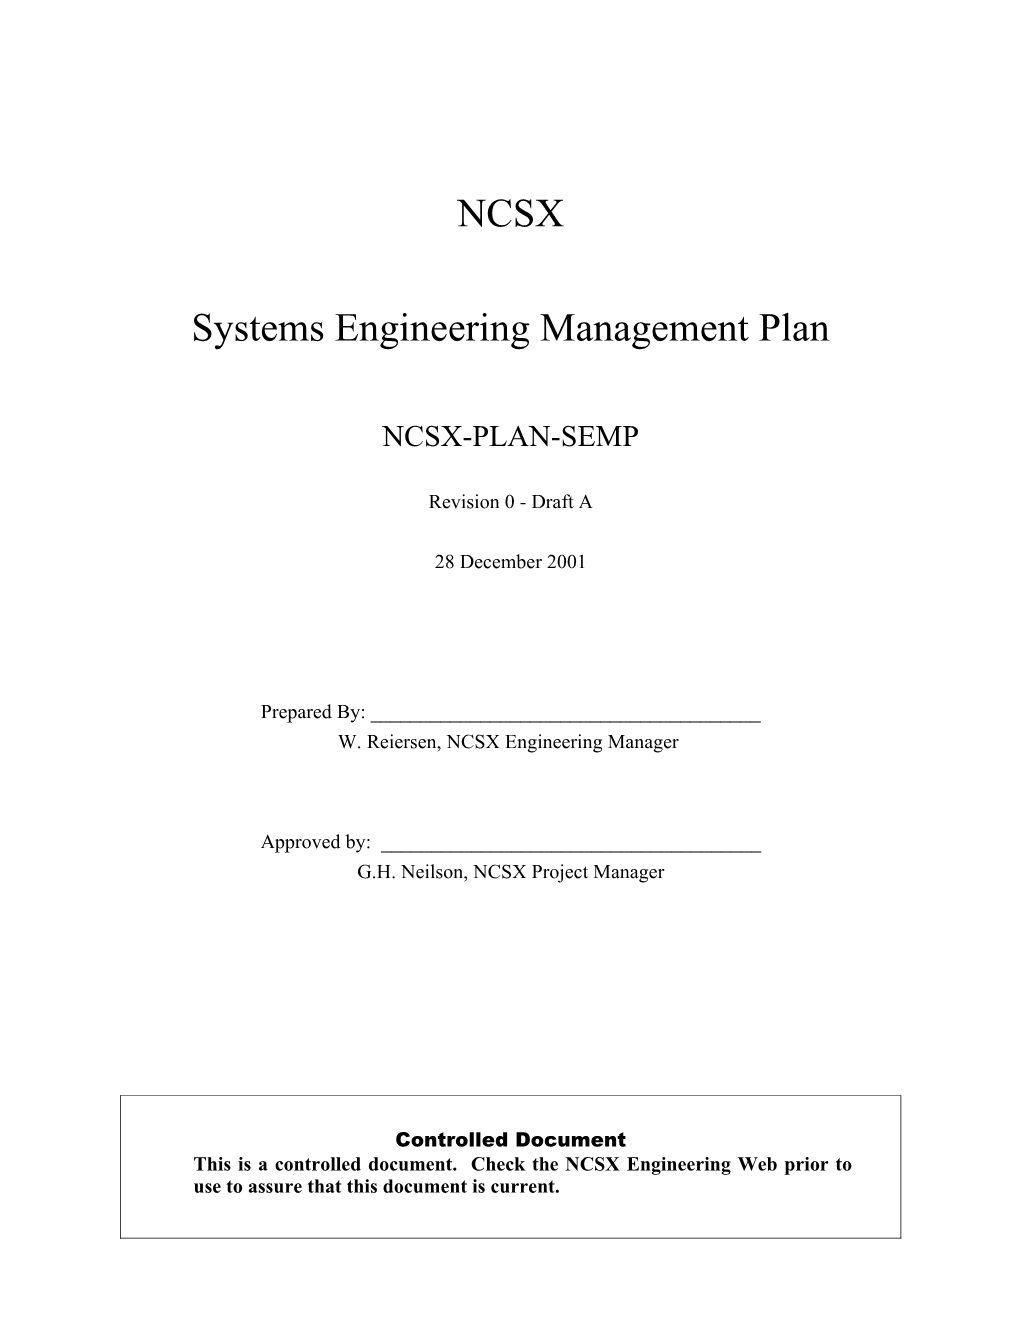 NCSX-PLAN-SEMP-00 Draft A